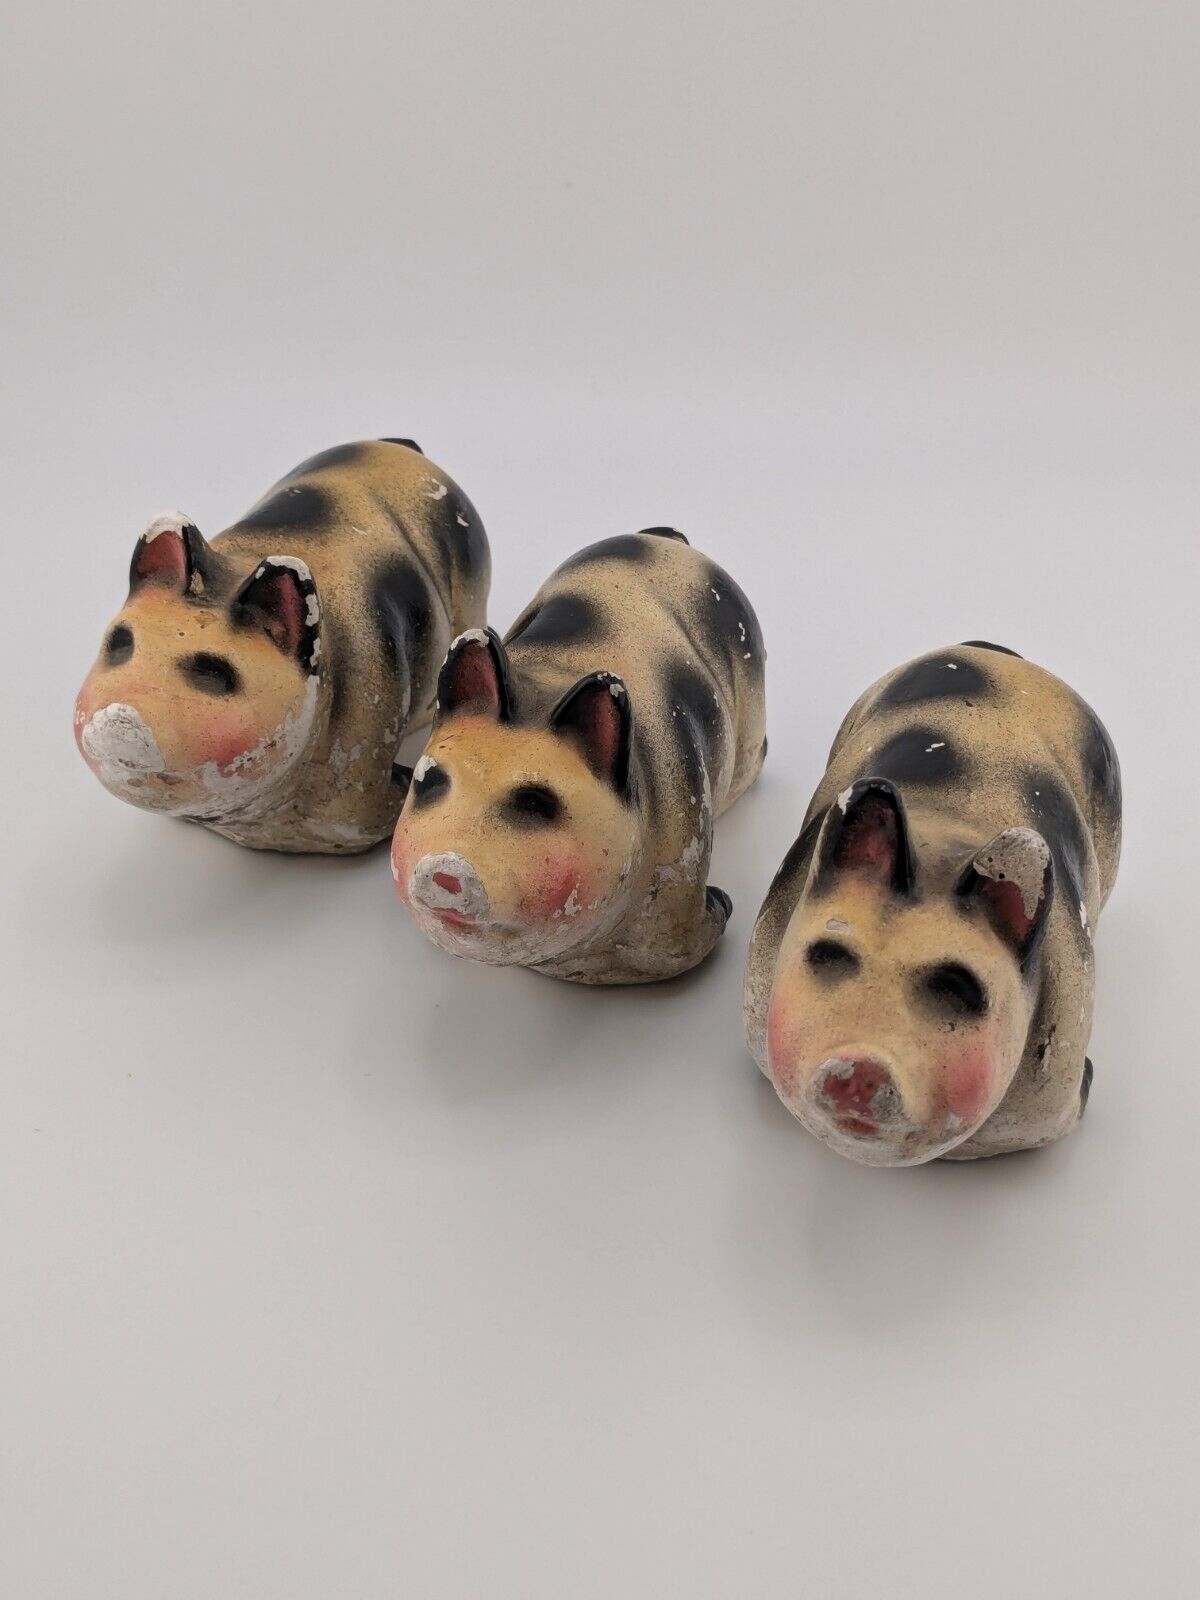 Antique Vintage Three Little Piggies Chalkware Figurines Pig Piglet